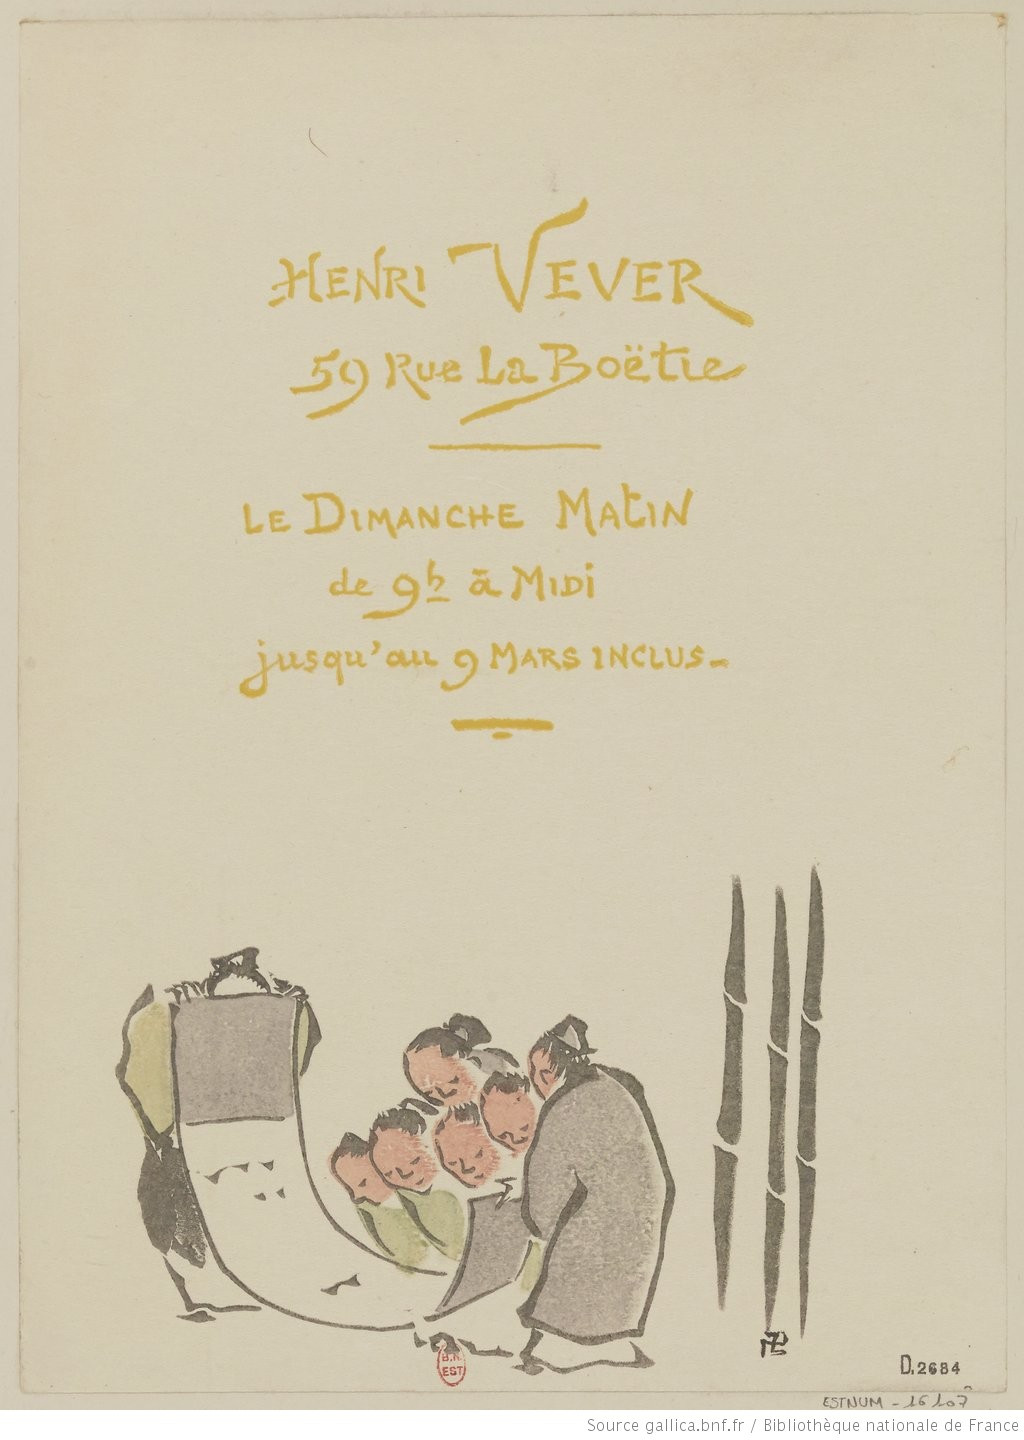 Carte de Vever portant son nom ainsi qu'un dessin de petits personnages